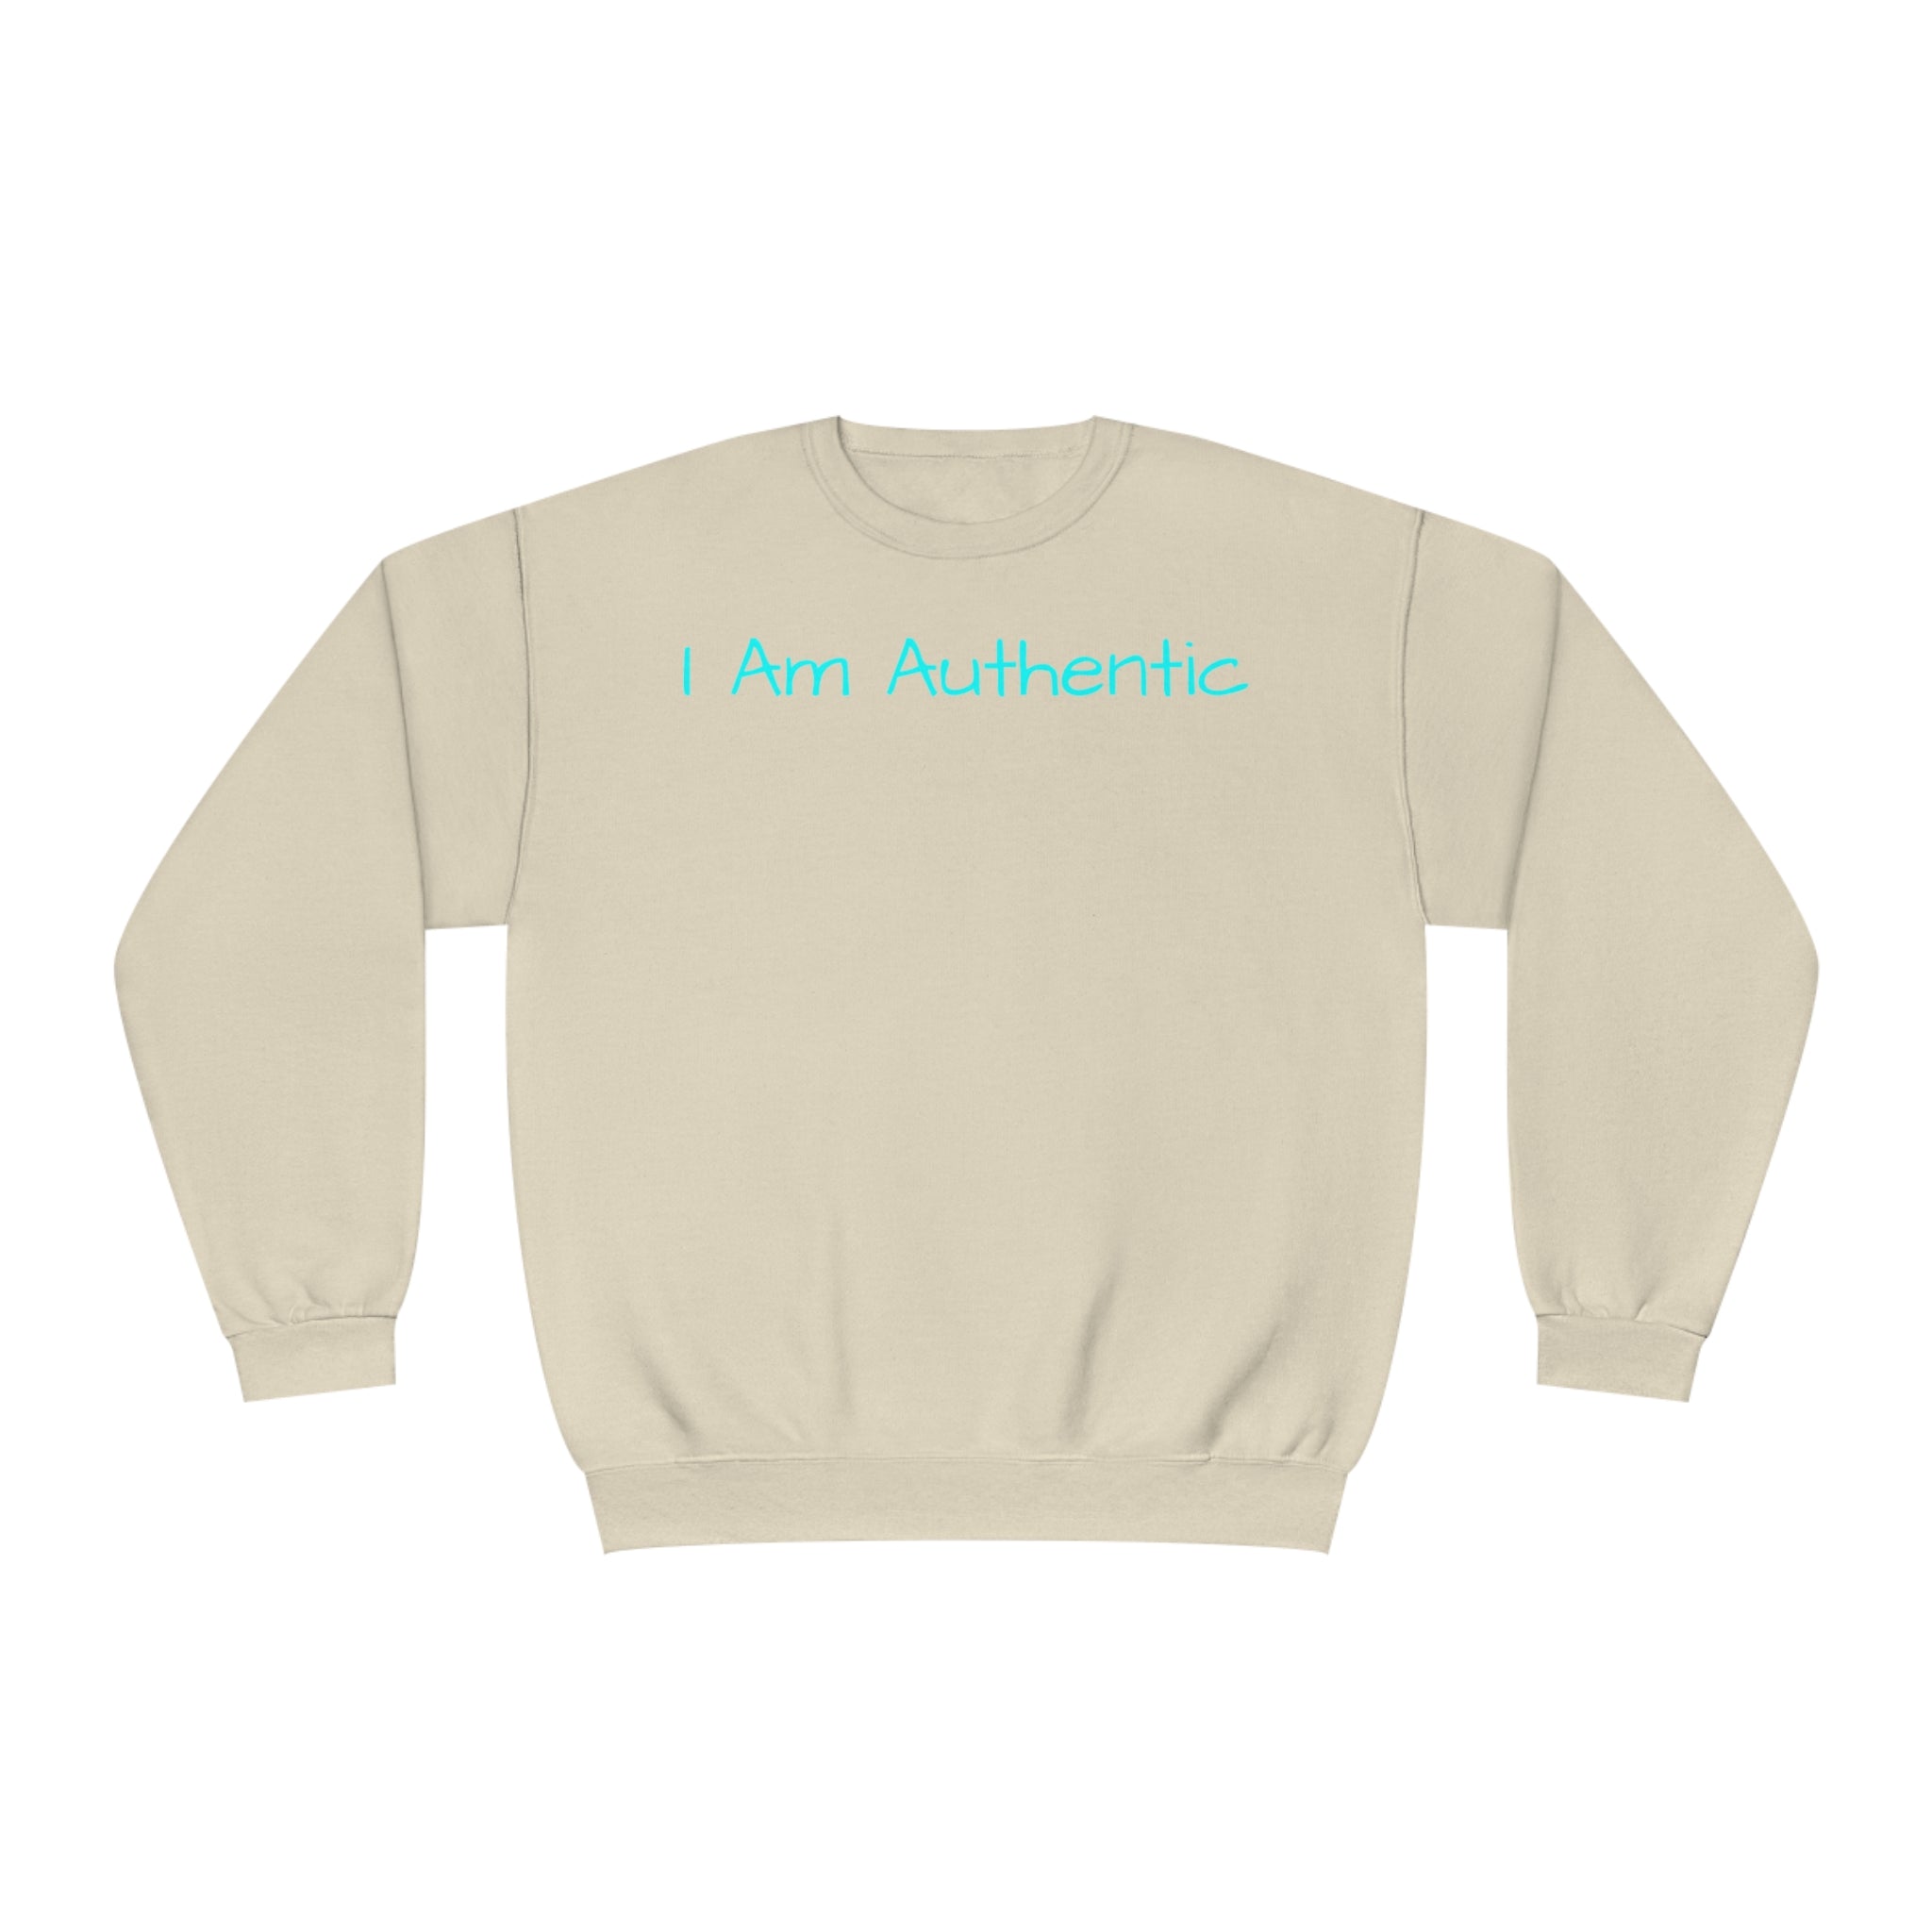 I Am Authentic Fleece Sweatshirt: Comfort & Positivity Sandstone Comfy Sweater Cozy Sweatshirt Crewneck Sweatshirt Fleece Pullover Graphic Sweatshirt Men's Sweatshirt Streatwear Sweatshirt Warm Outerwear Women's Sweatshirt Sweatshirt 2898964200095622607_2048 Printify